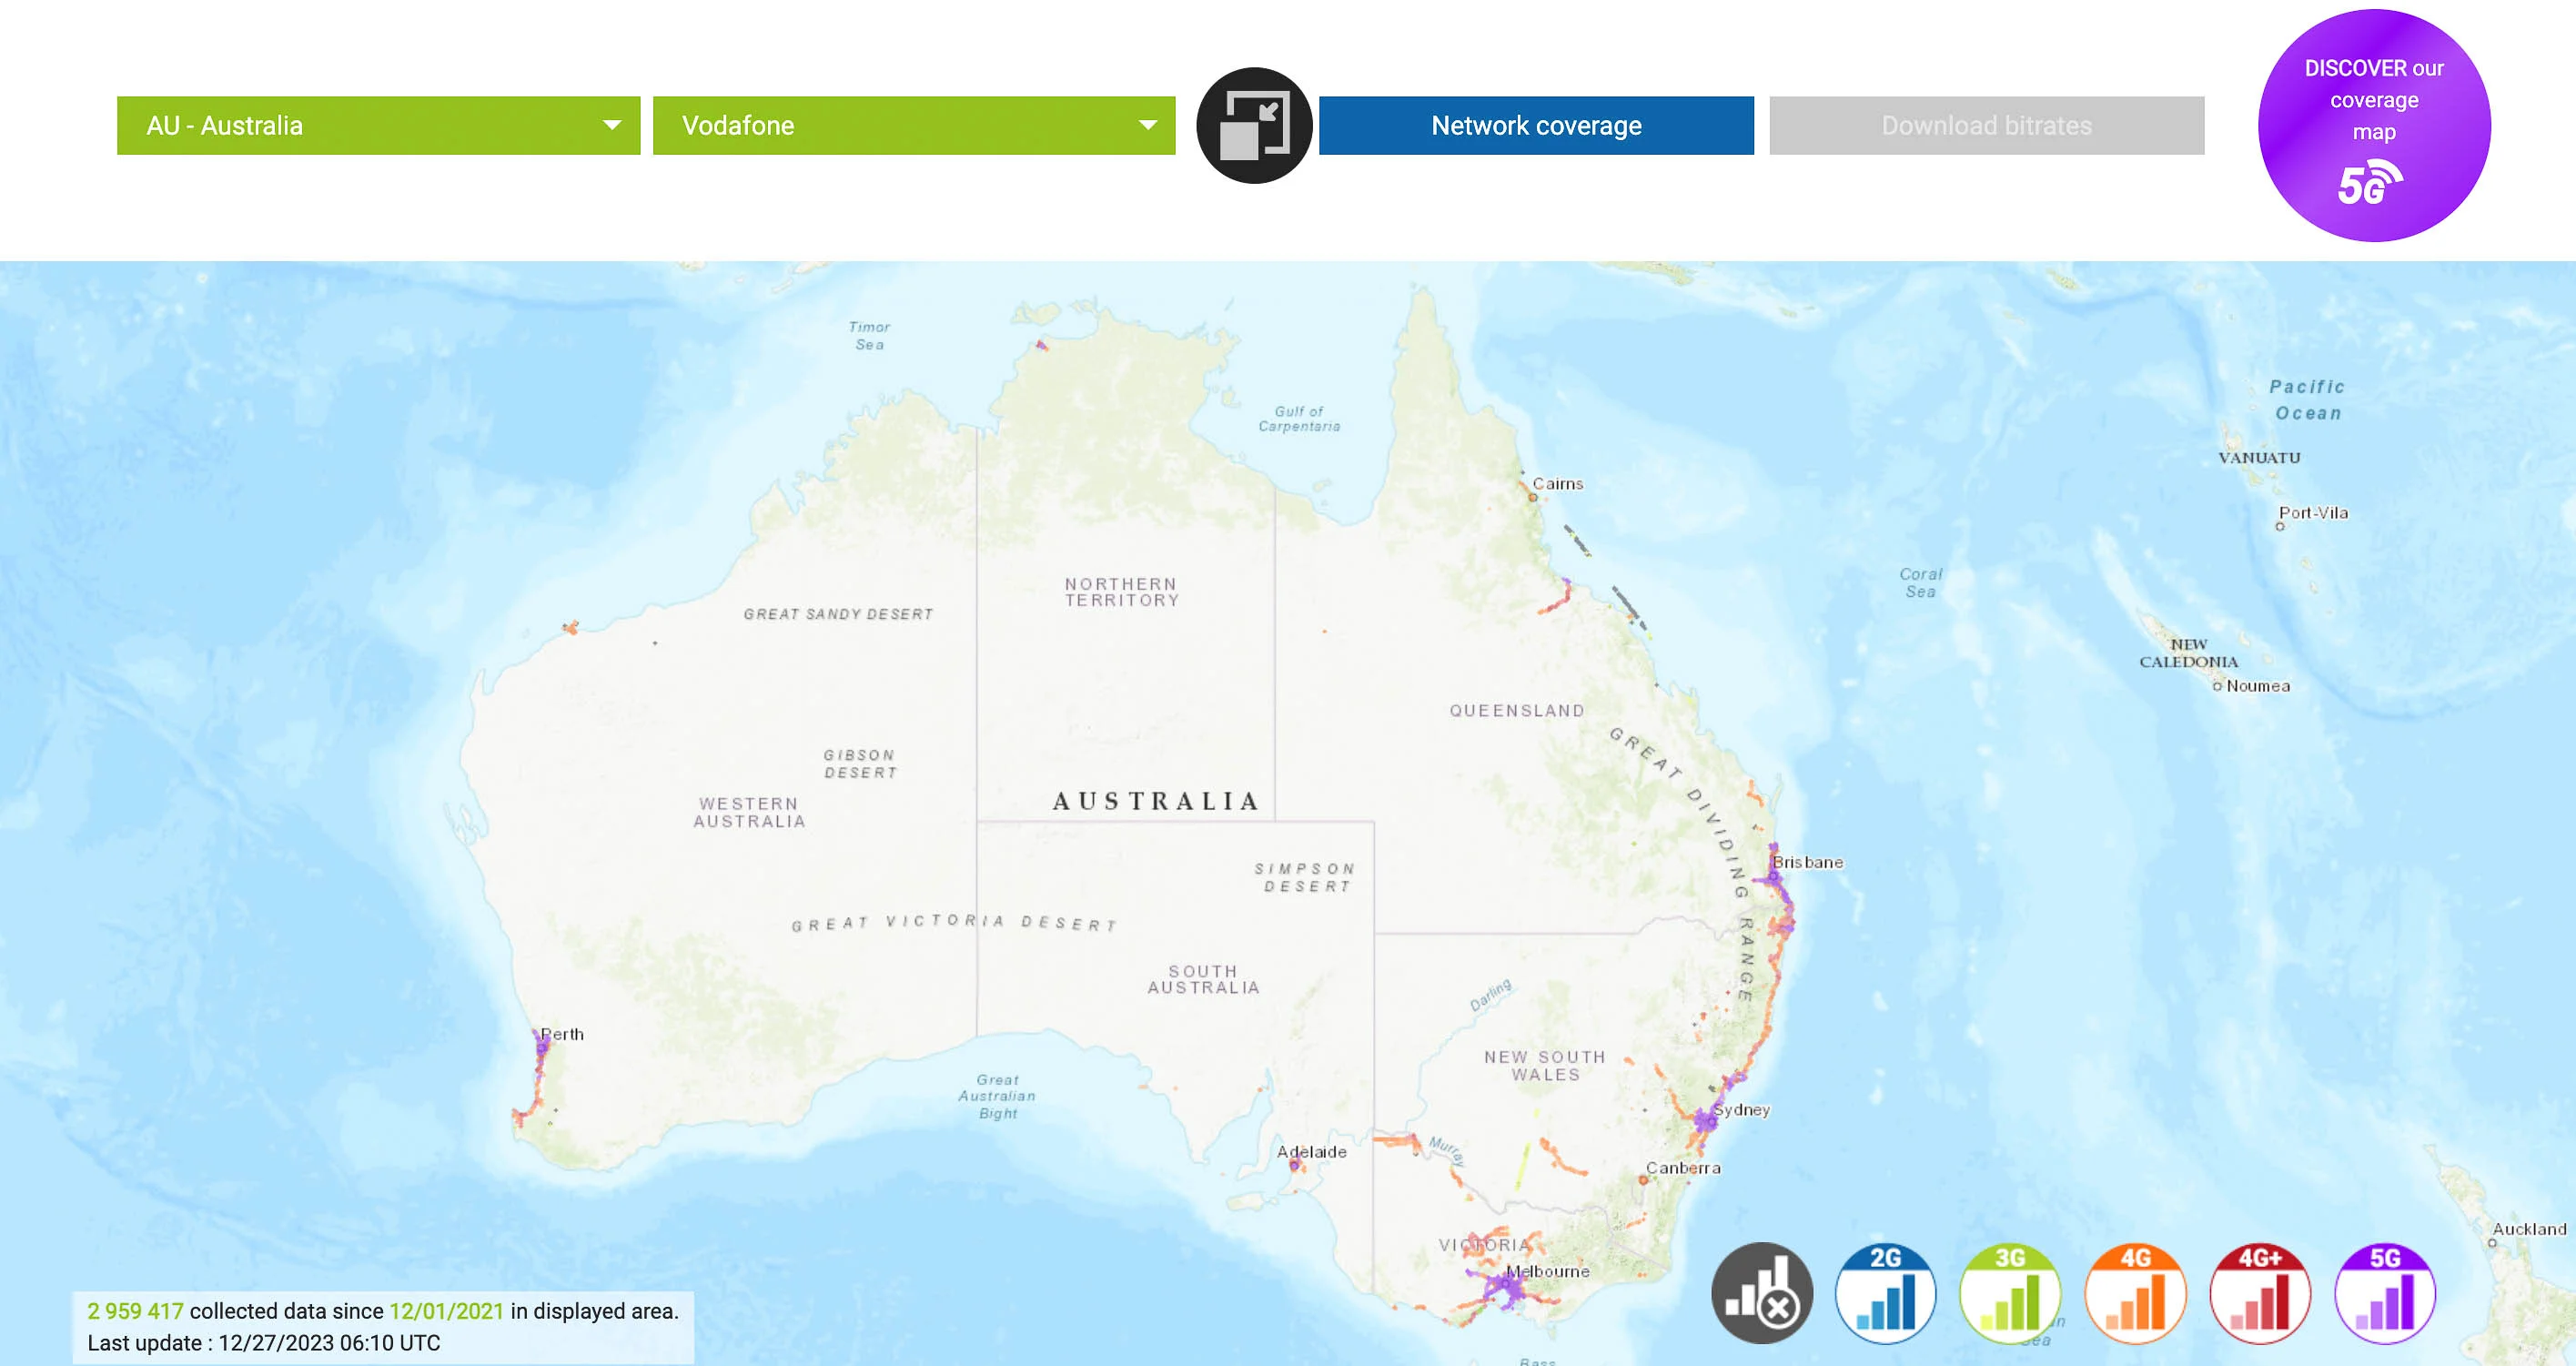 vodafone 4g 5g network coverage map australia 2024